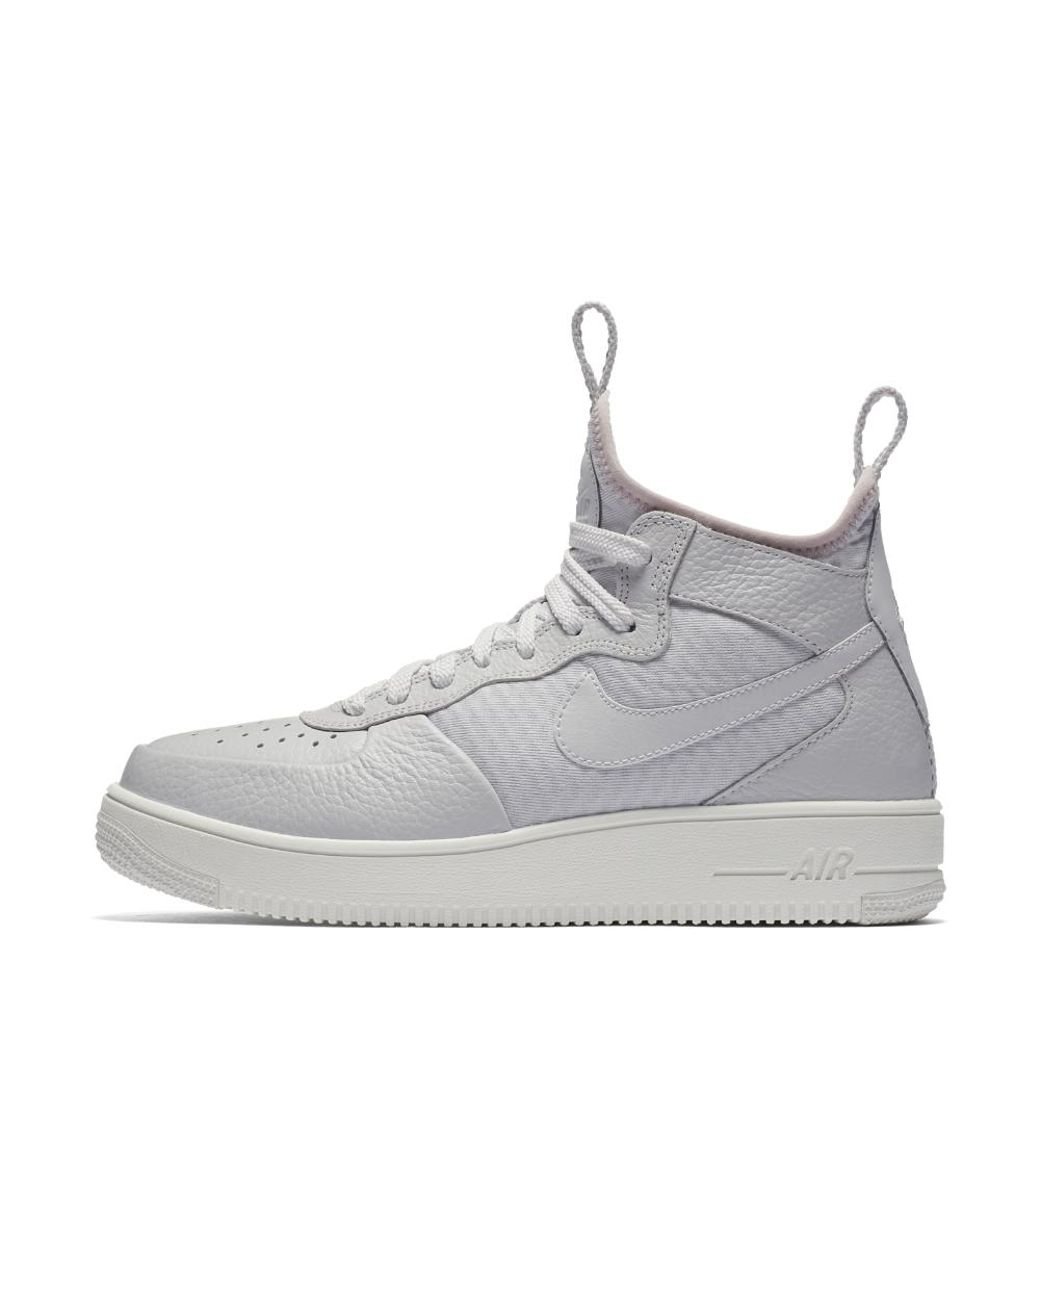 Nike Air Force 1 Ultraforce Mid Women's Shoe in Gray | Lyst